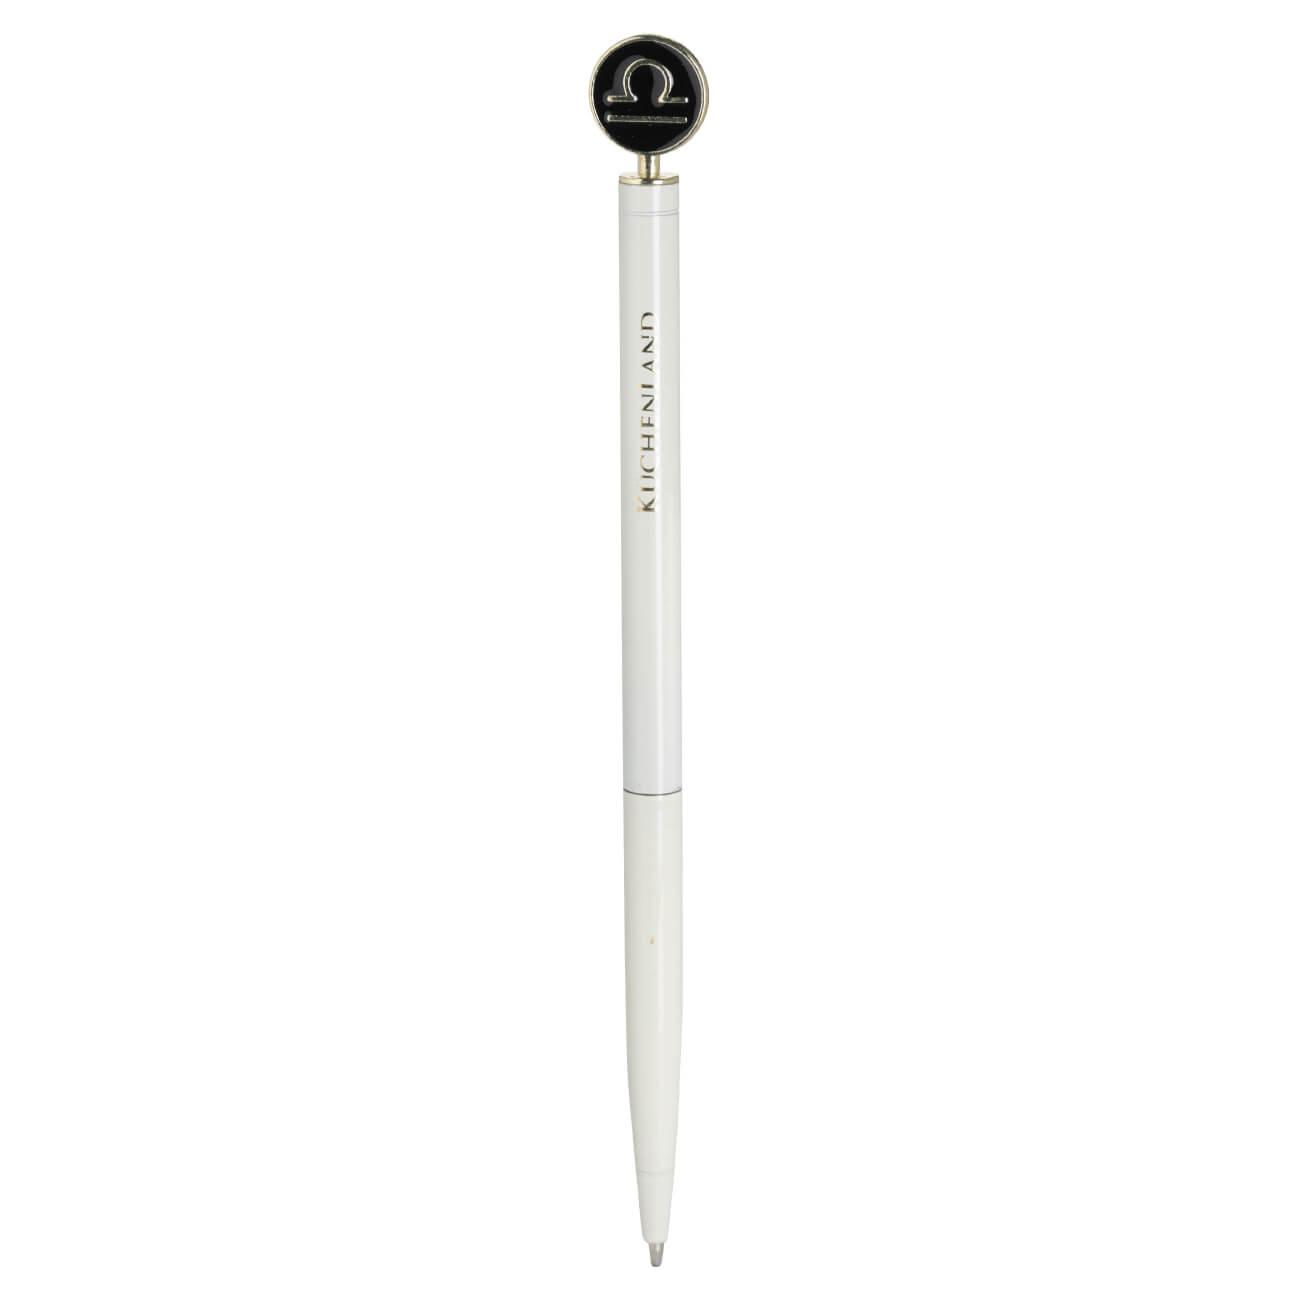 Ручка шариковая, 15 см, с фигуркой, сталь, молочно-золотистая, Весы, Zodiac ручка закладка